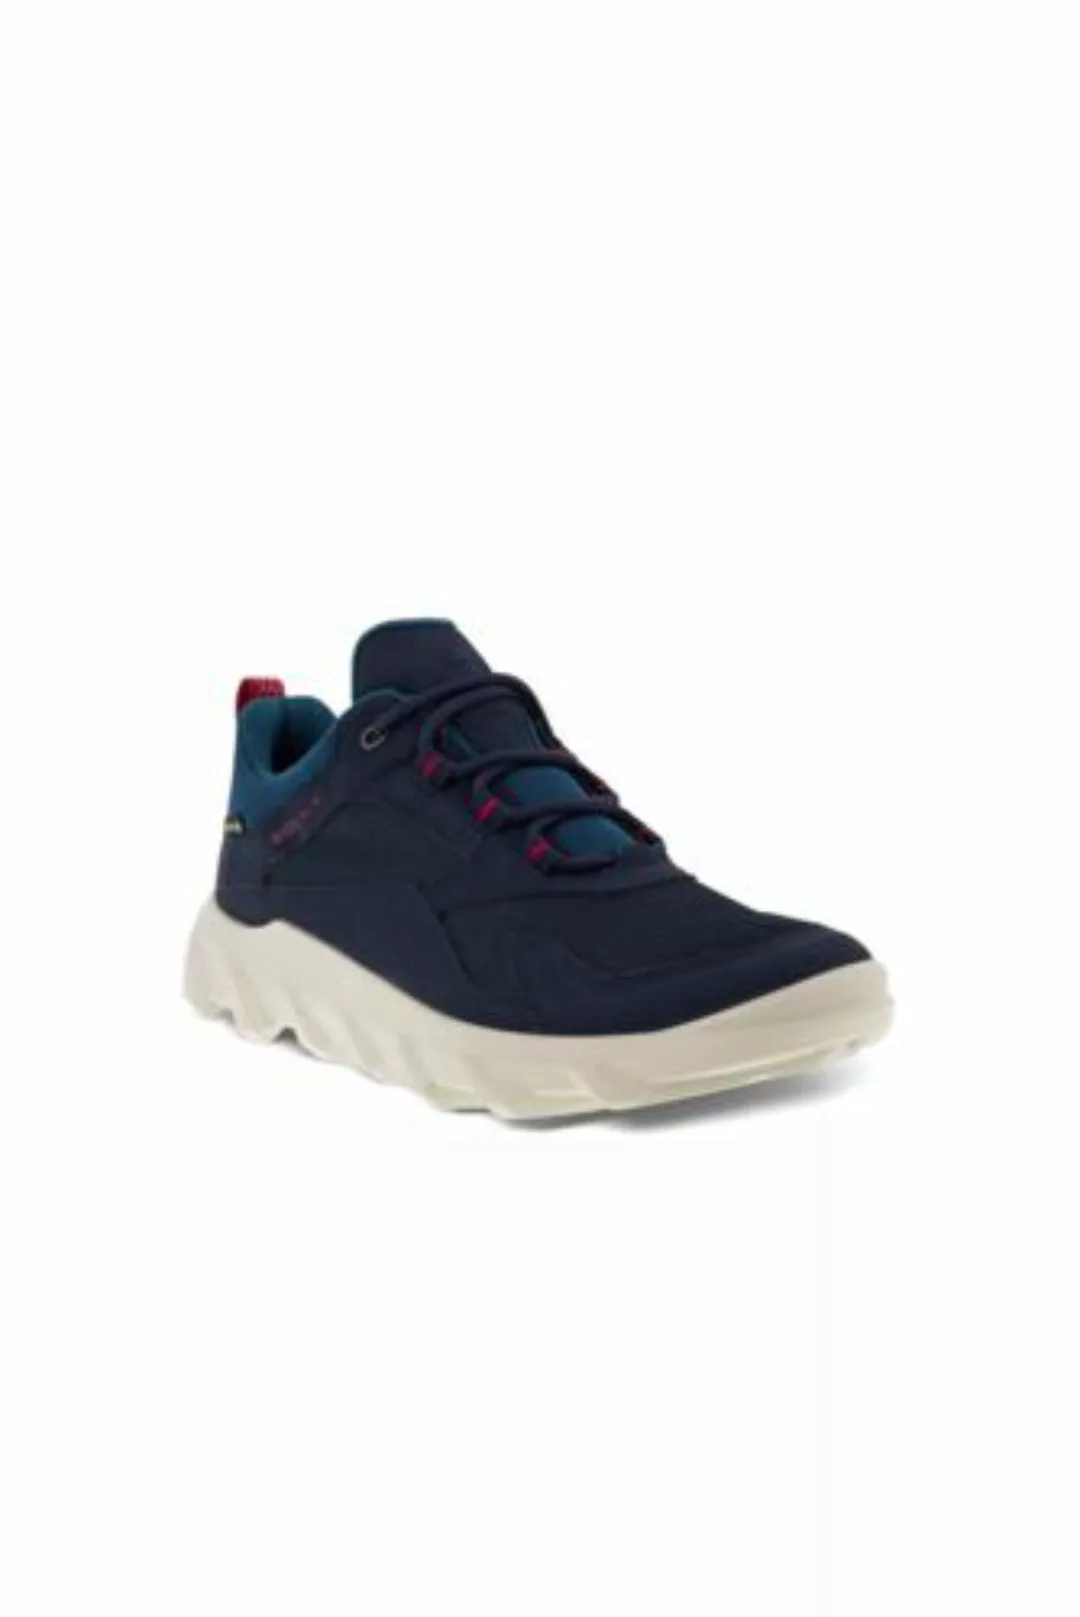 ECCO MX Sneaker, Damen, Größe: 38 Normal, Blau, by Lands' End, Nacht Himmel günstig online kaufen